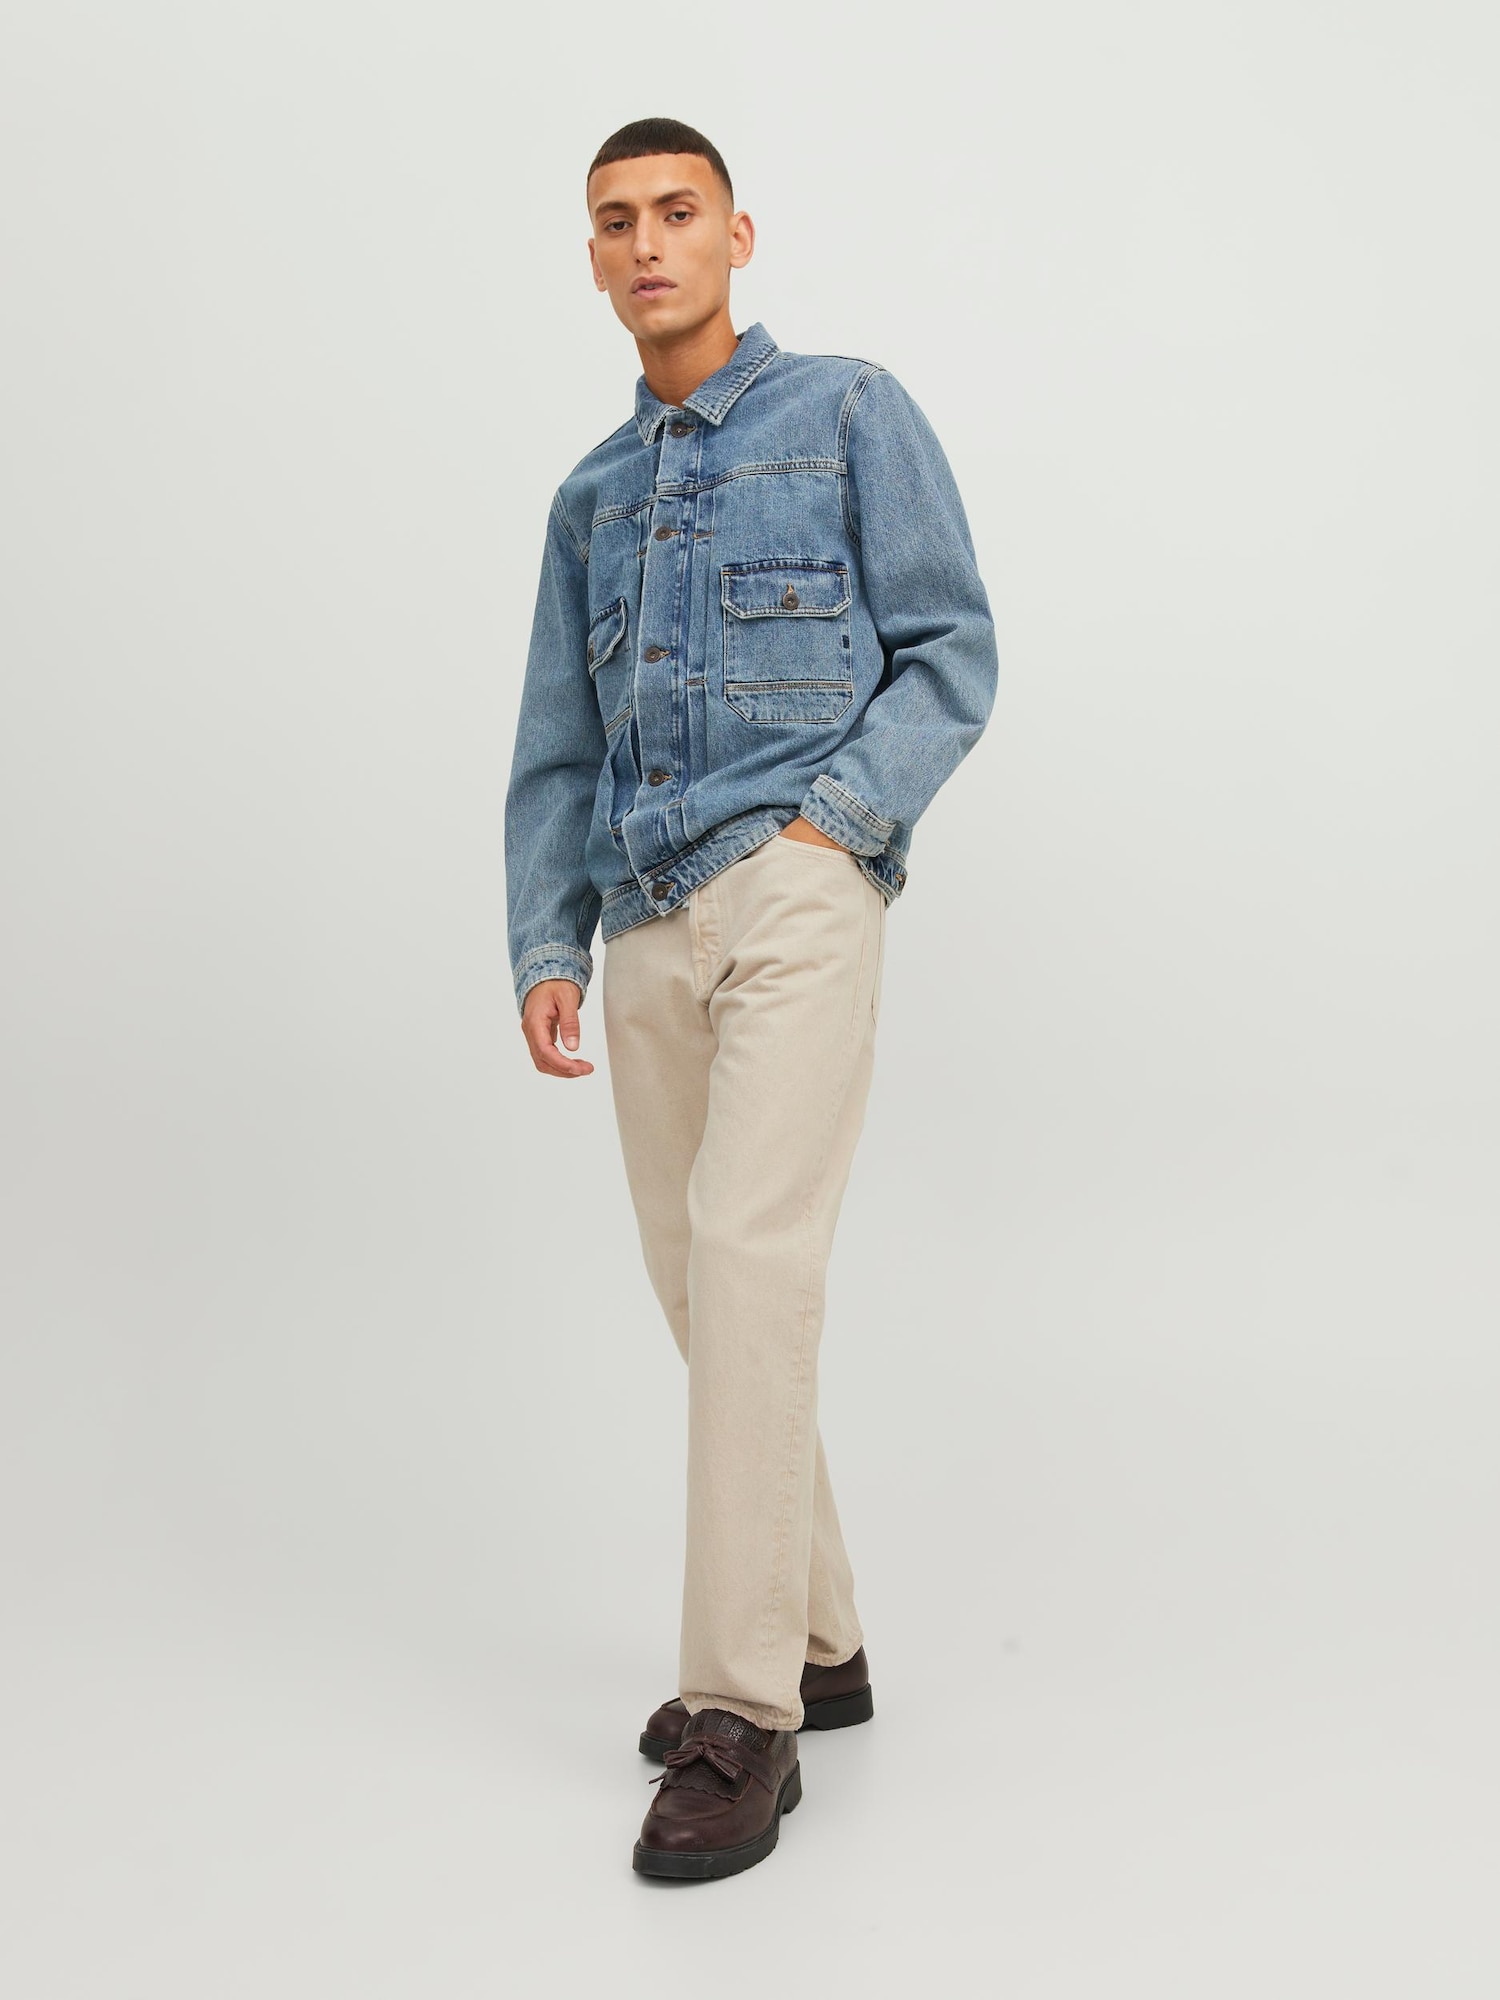 Jeans 'Chris Cooper' von jack & jones